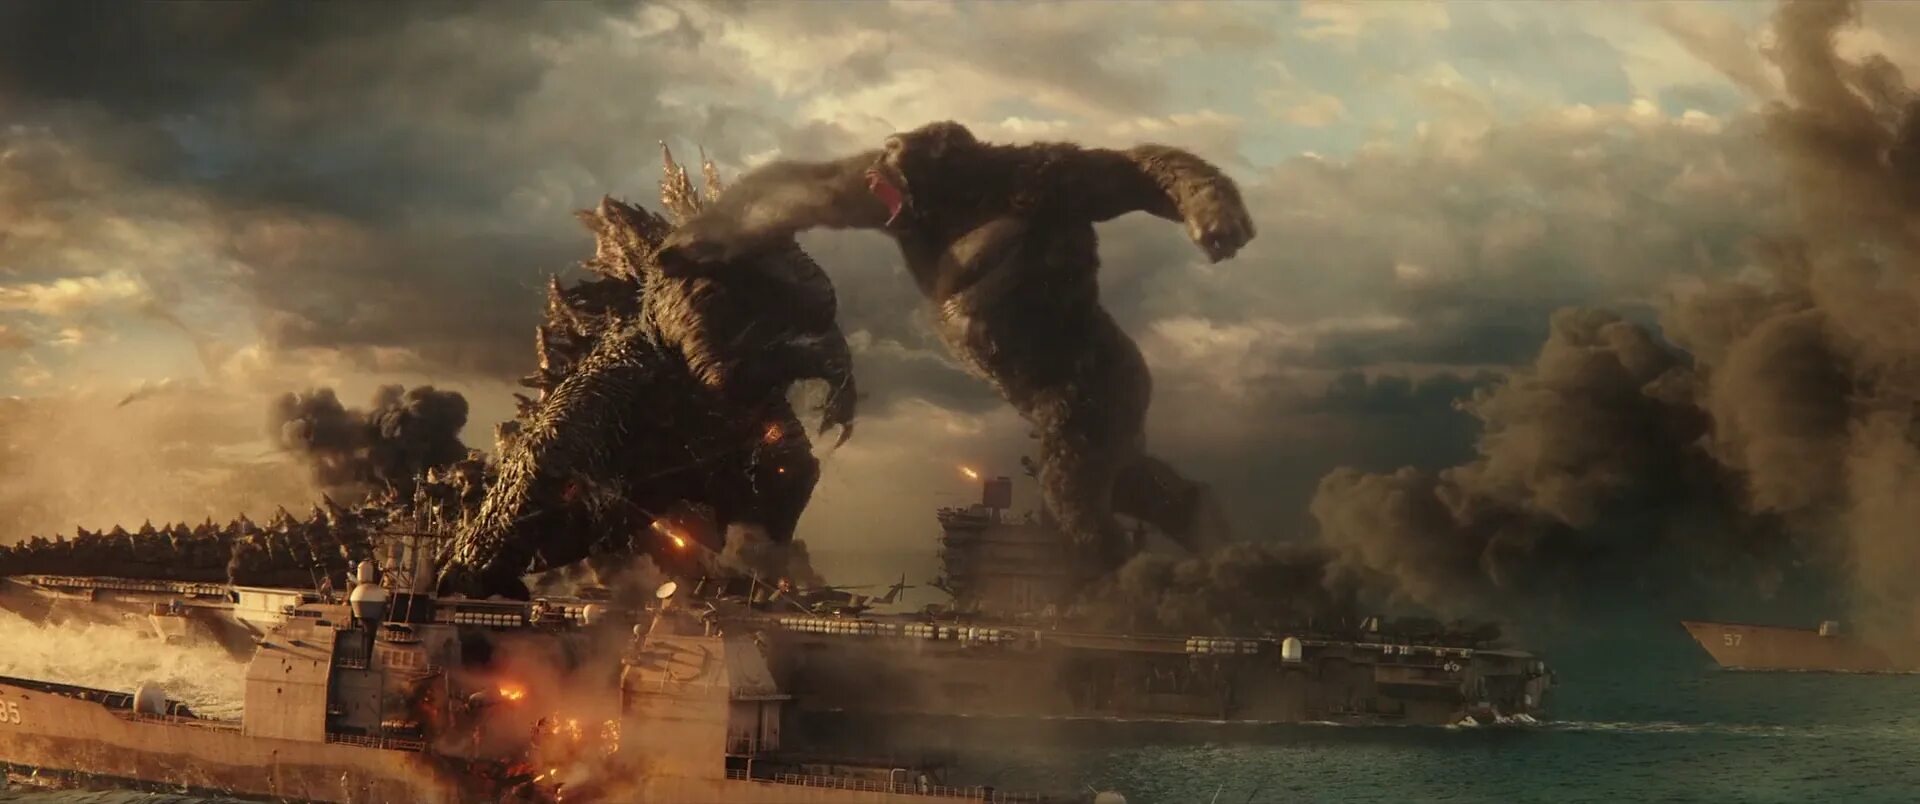 Godzilla x king kong